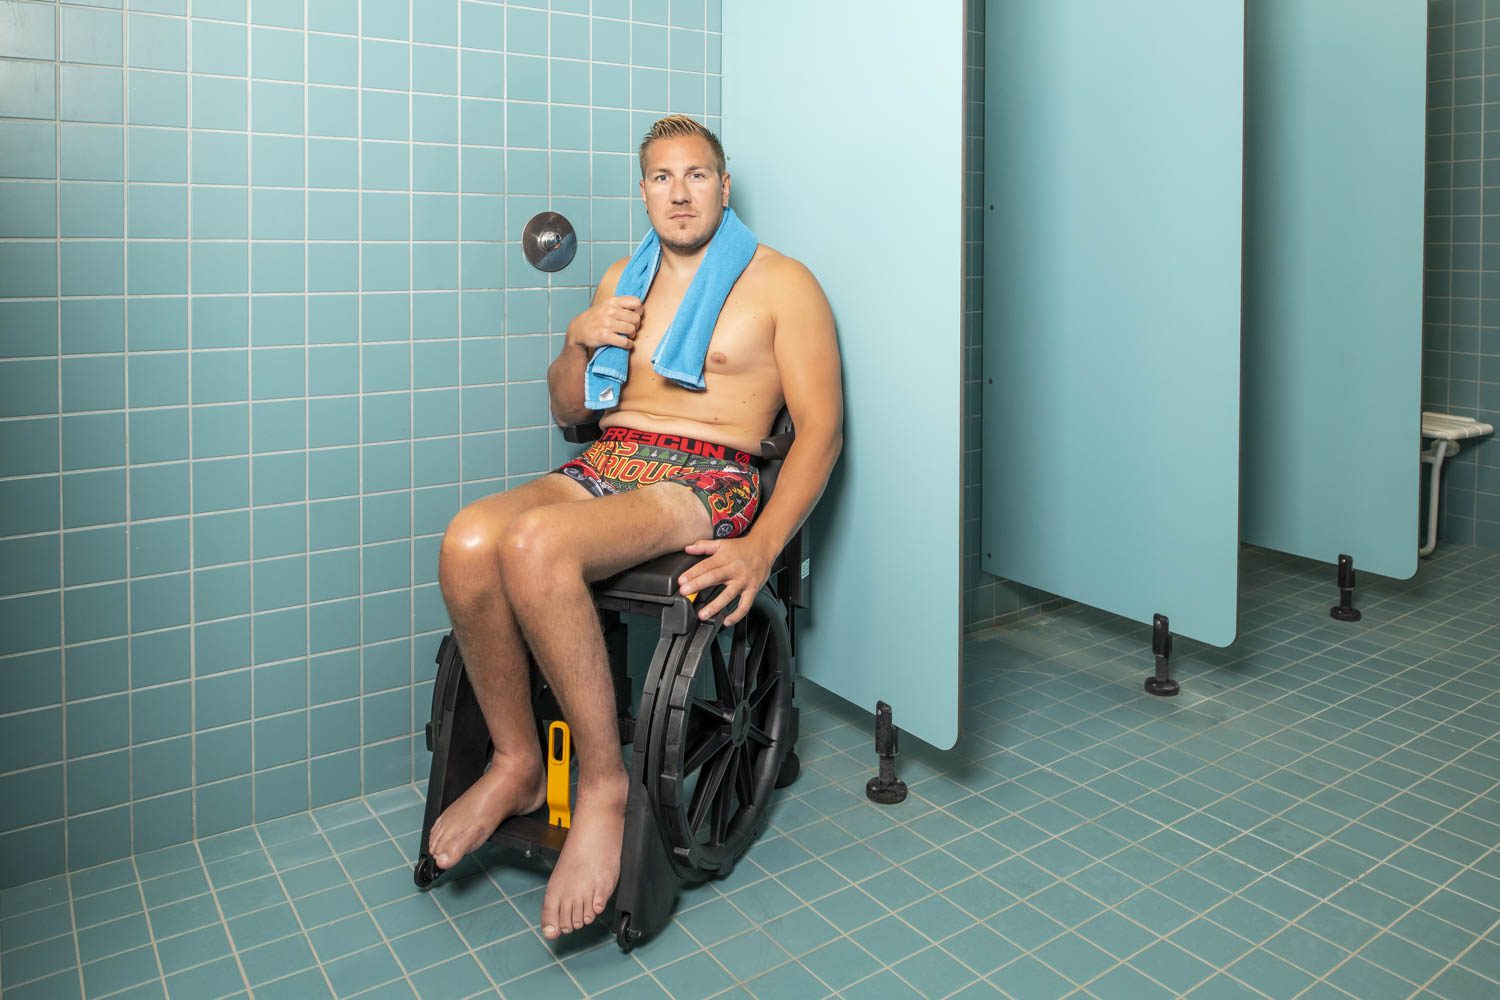 Le sportif olympique Rémy Boullé utilise le fauteuil WheelAble dans une douche publique